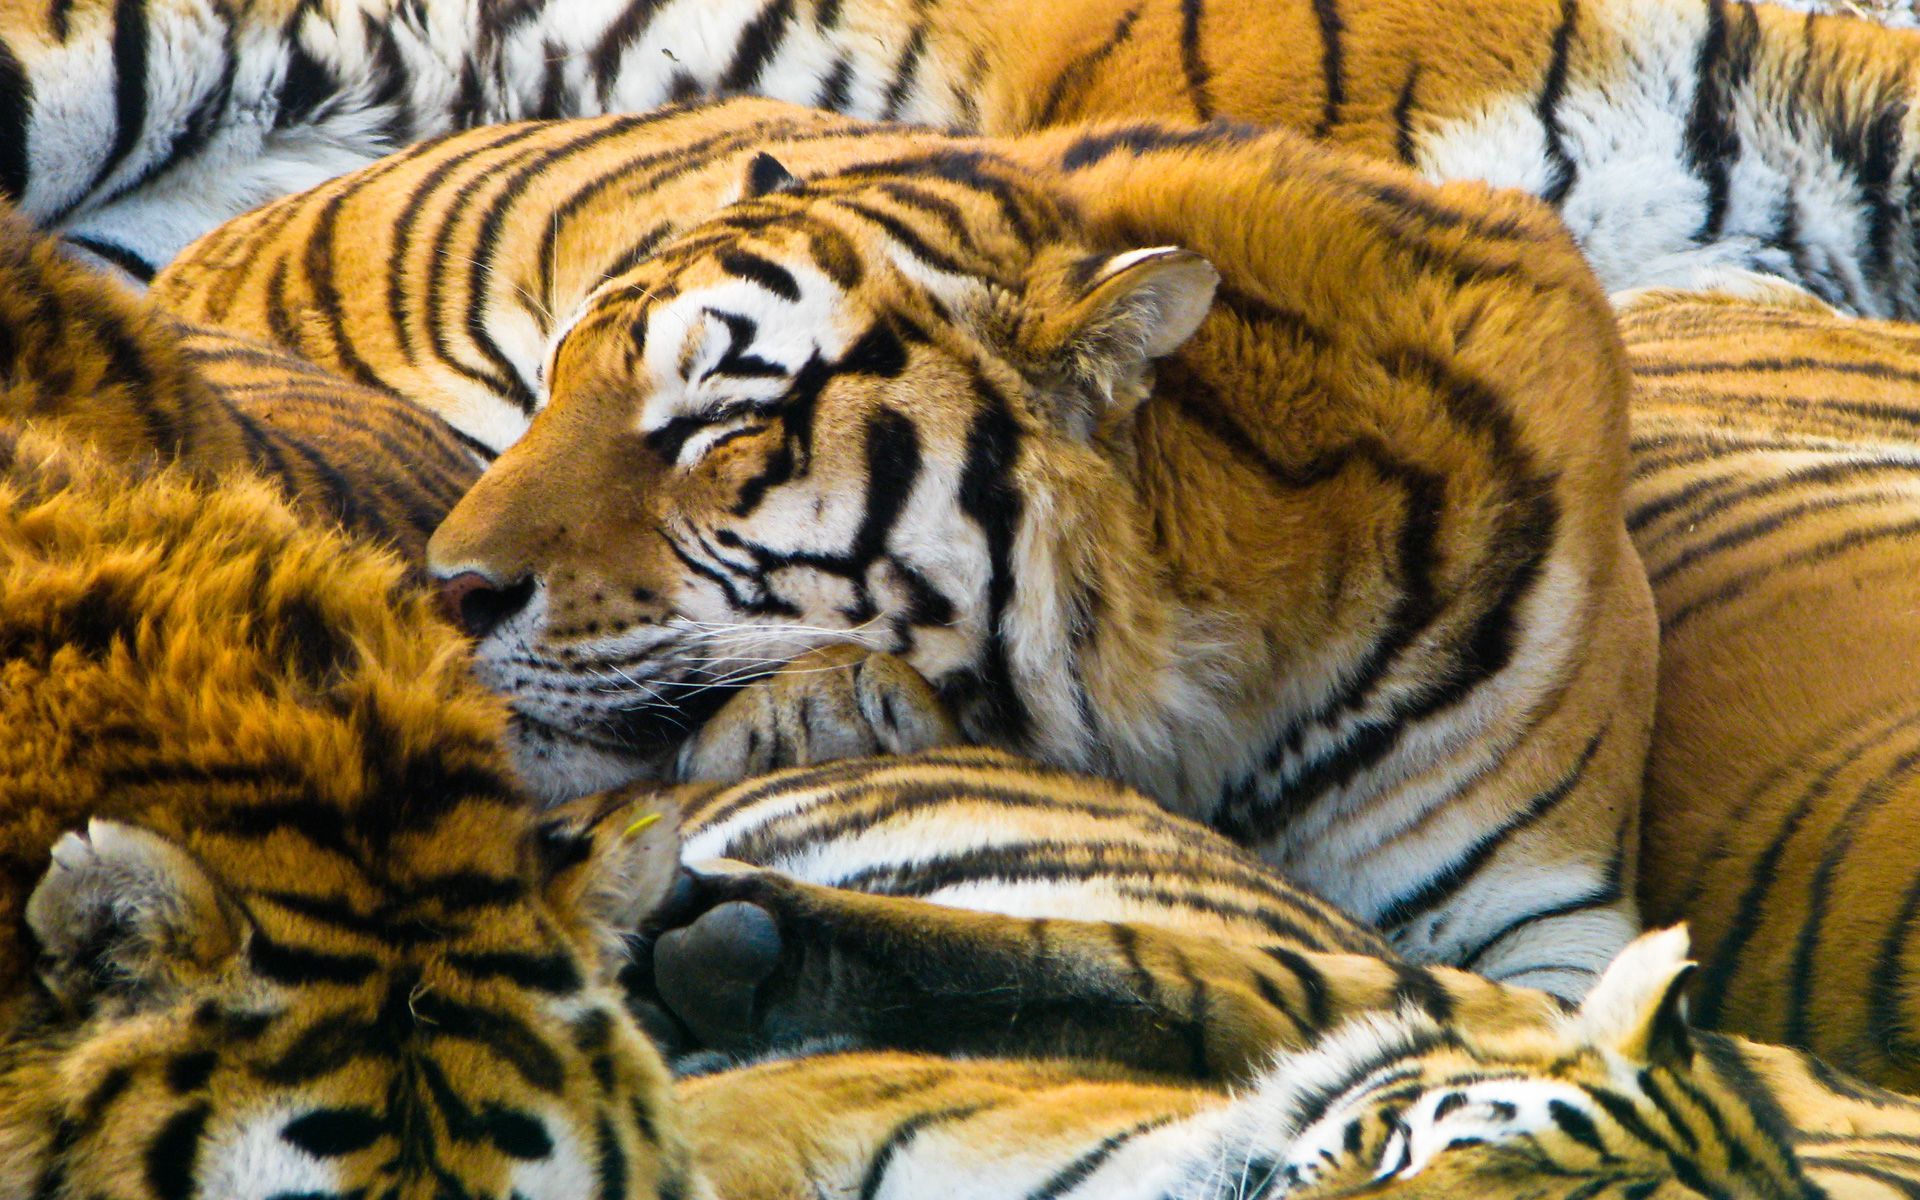 baby tigers sleeping